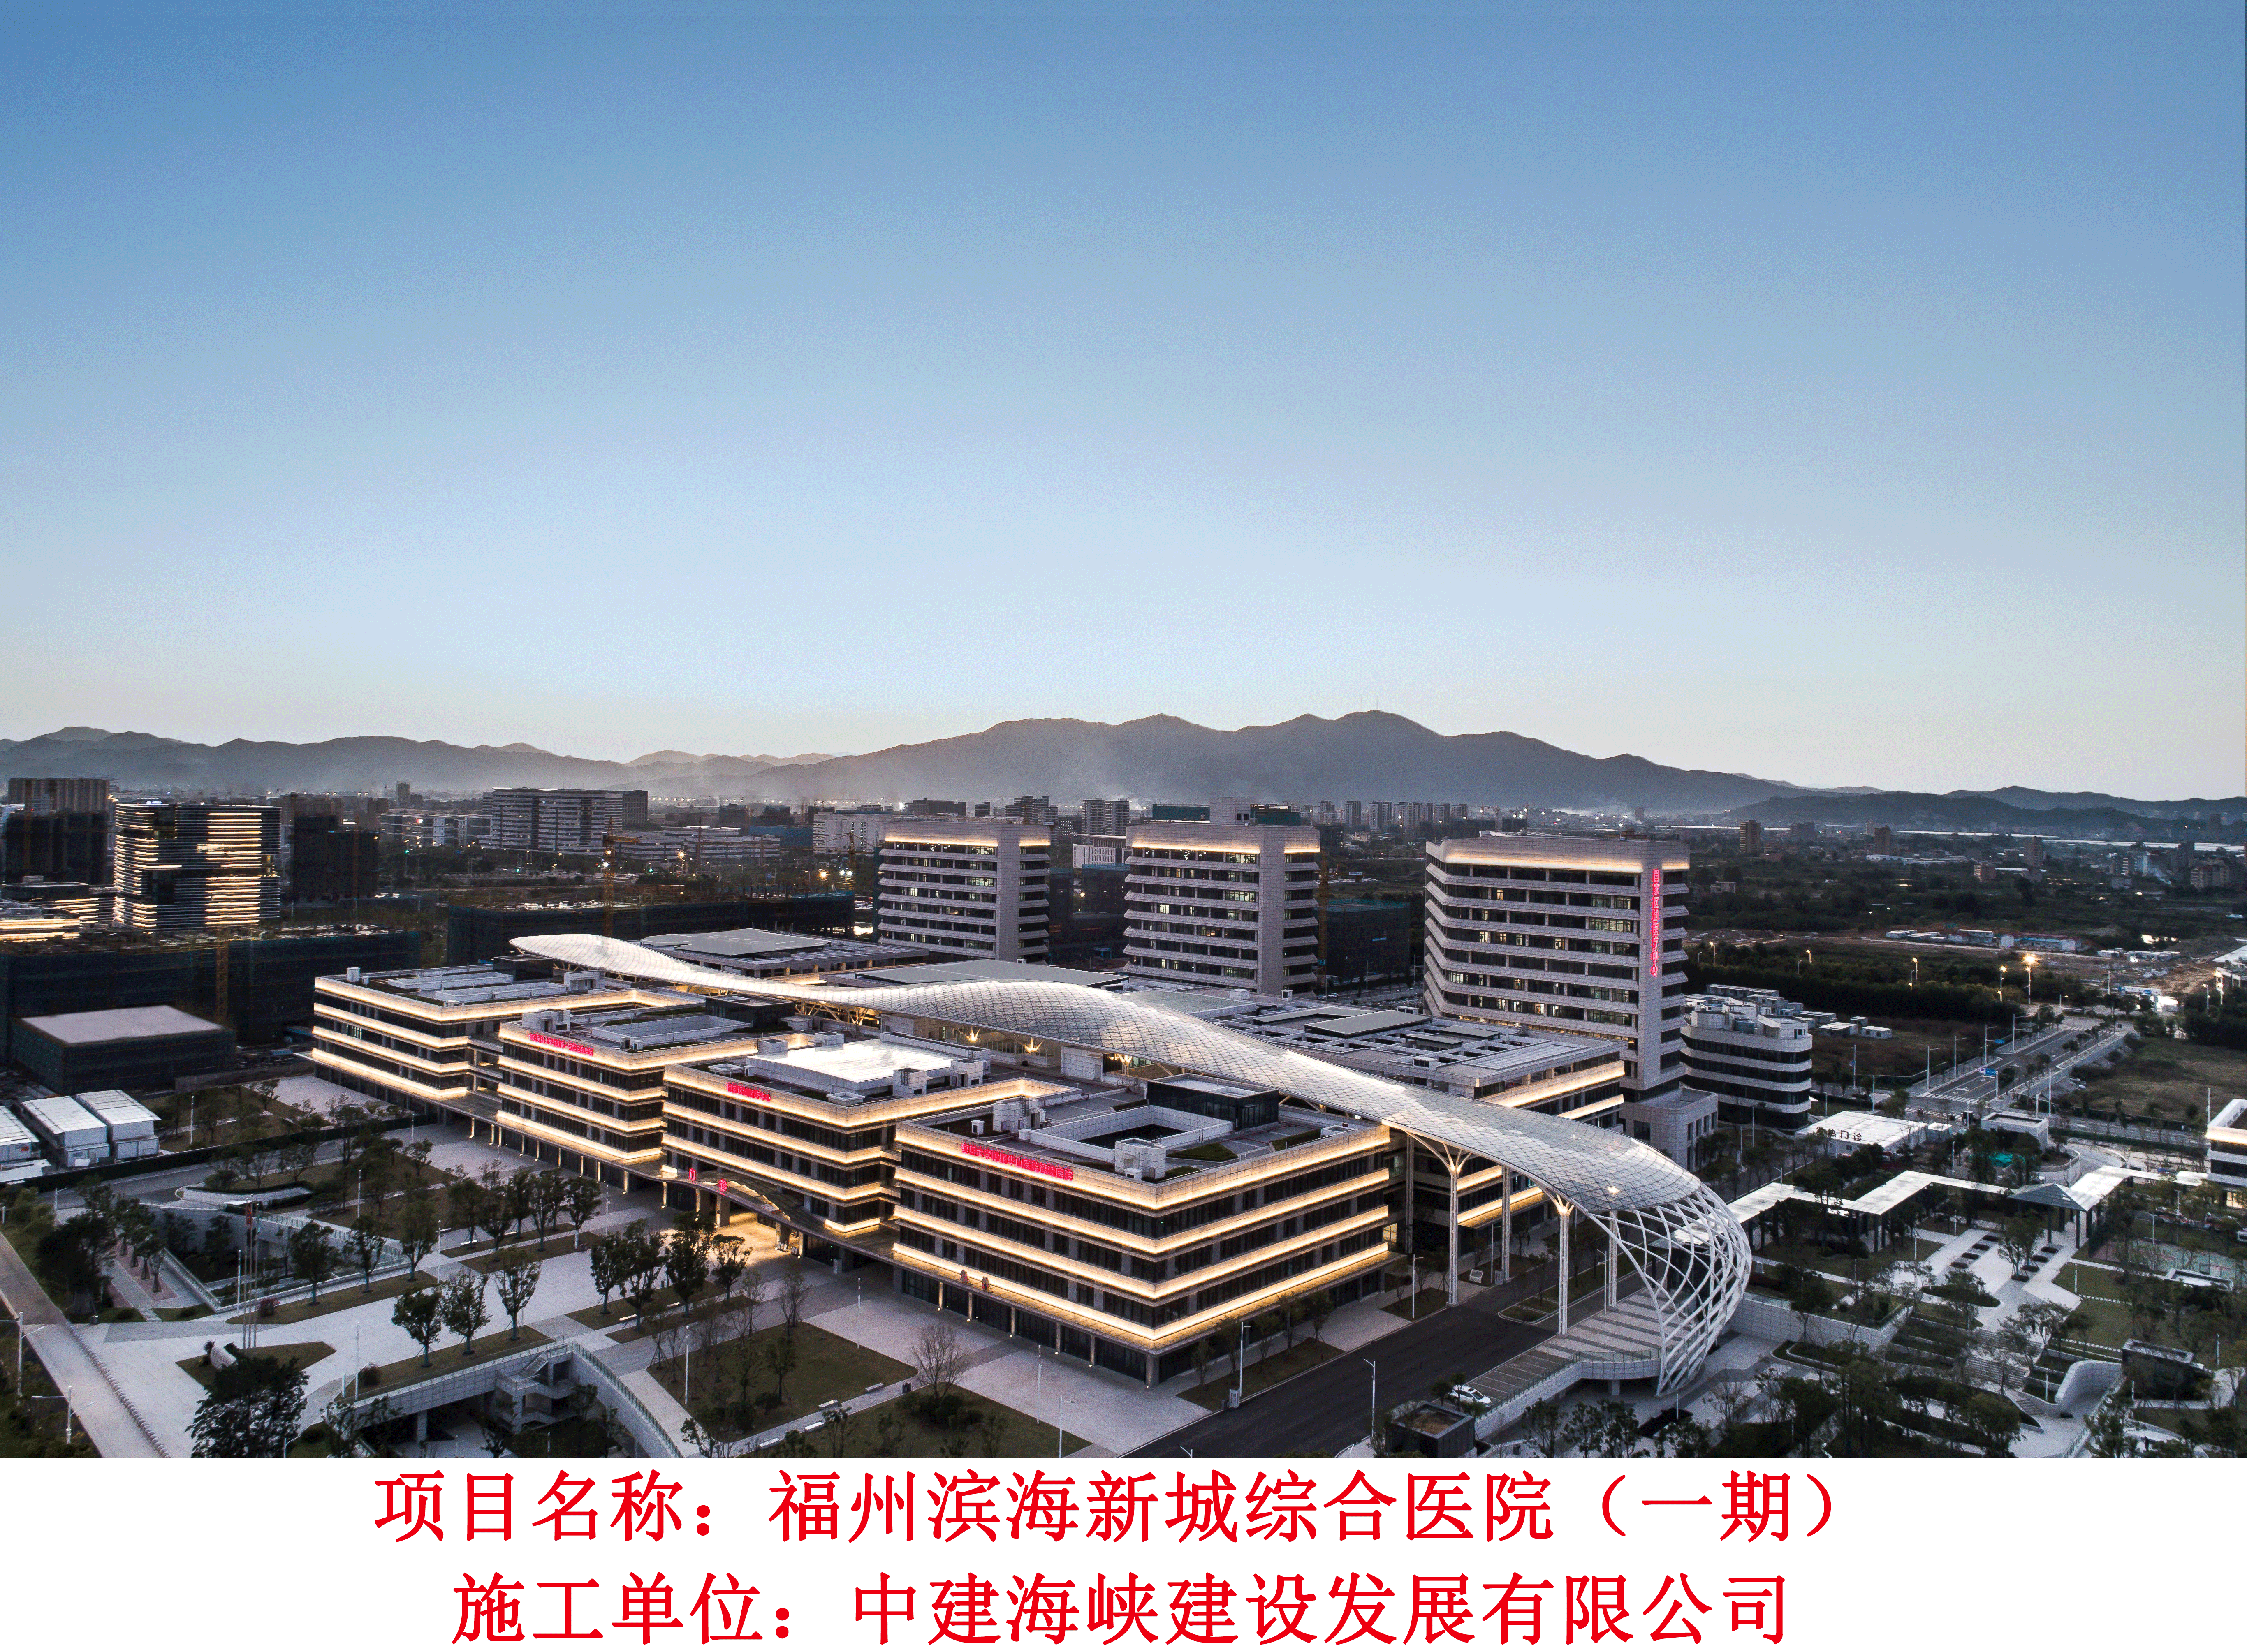 福州滨海新城综合医院（一期）